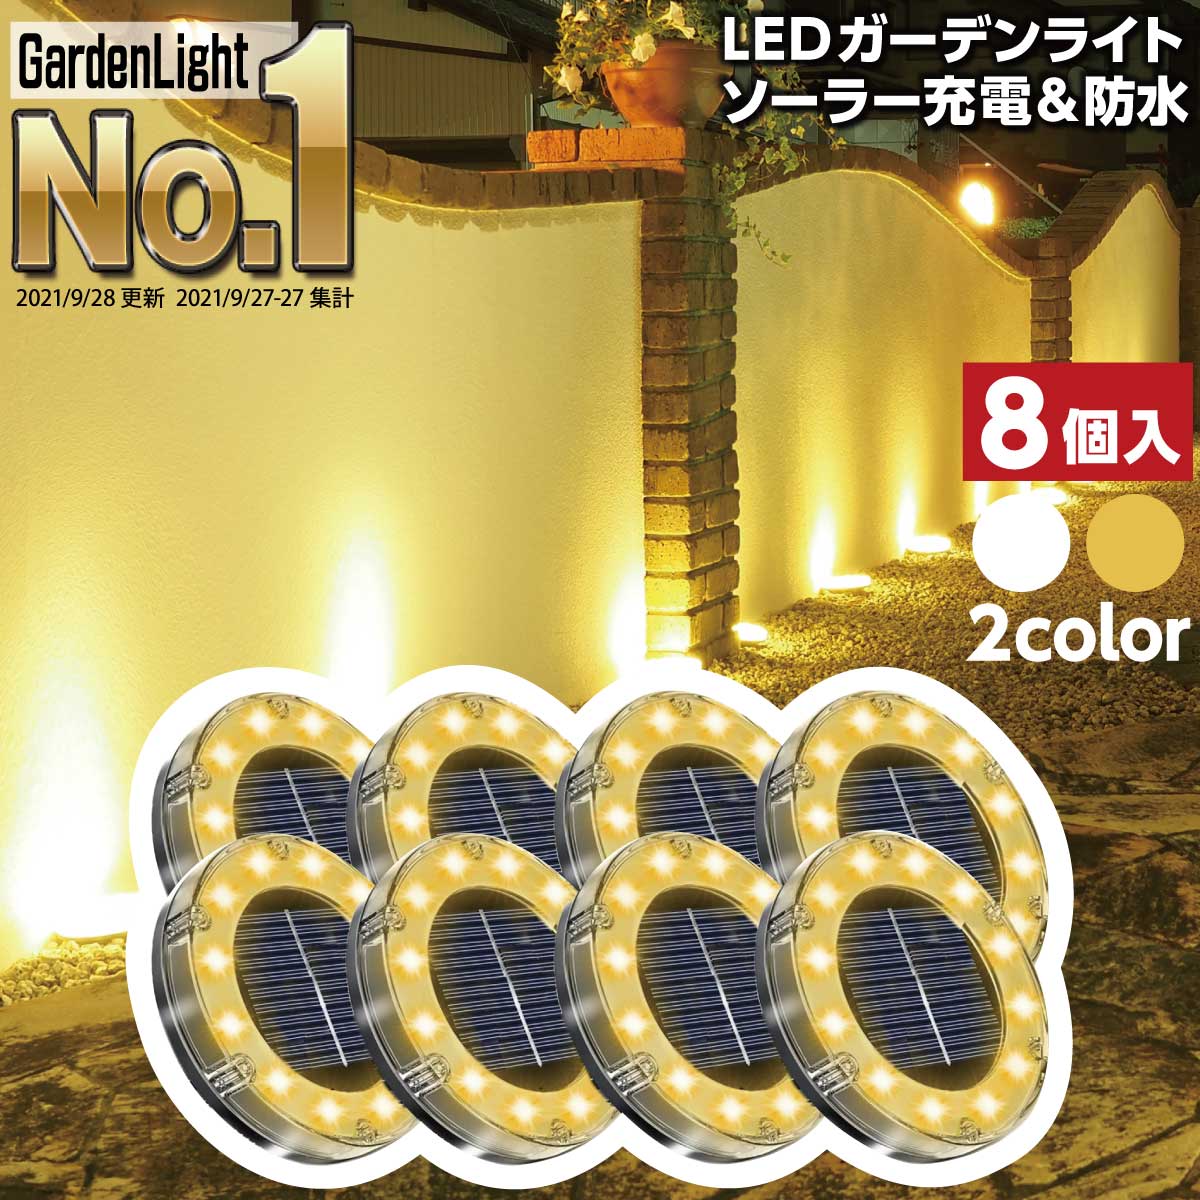 LEDガーデンライト [ENTLIGHT] 8個セット ソーラーライト 防水 センサー おしゃれ 屋外 庭 ライトアップ 外構 エントランス 置き型 埋め込み式